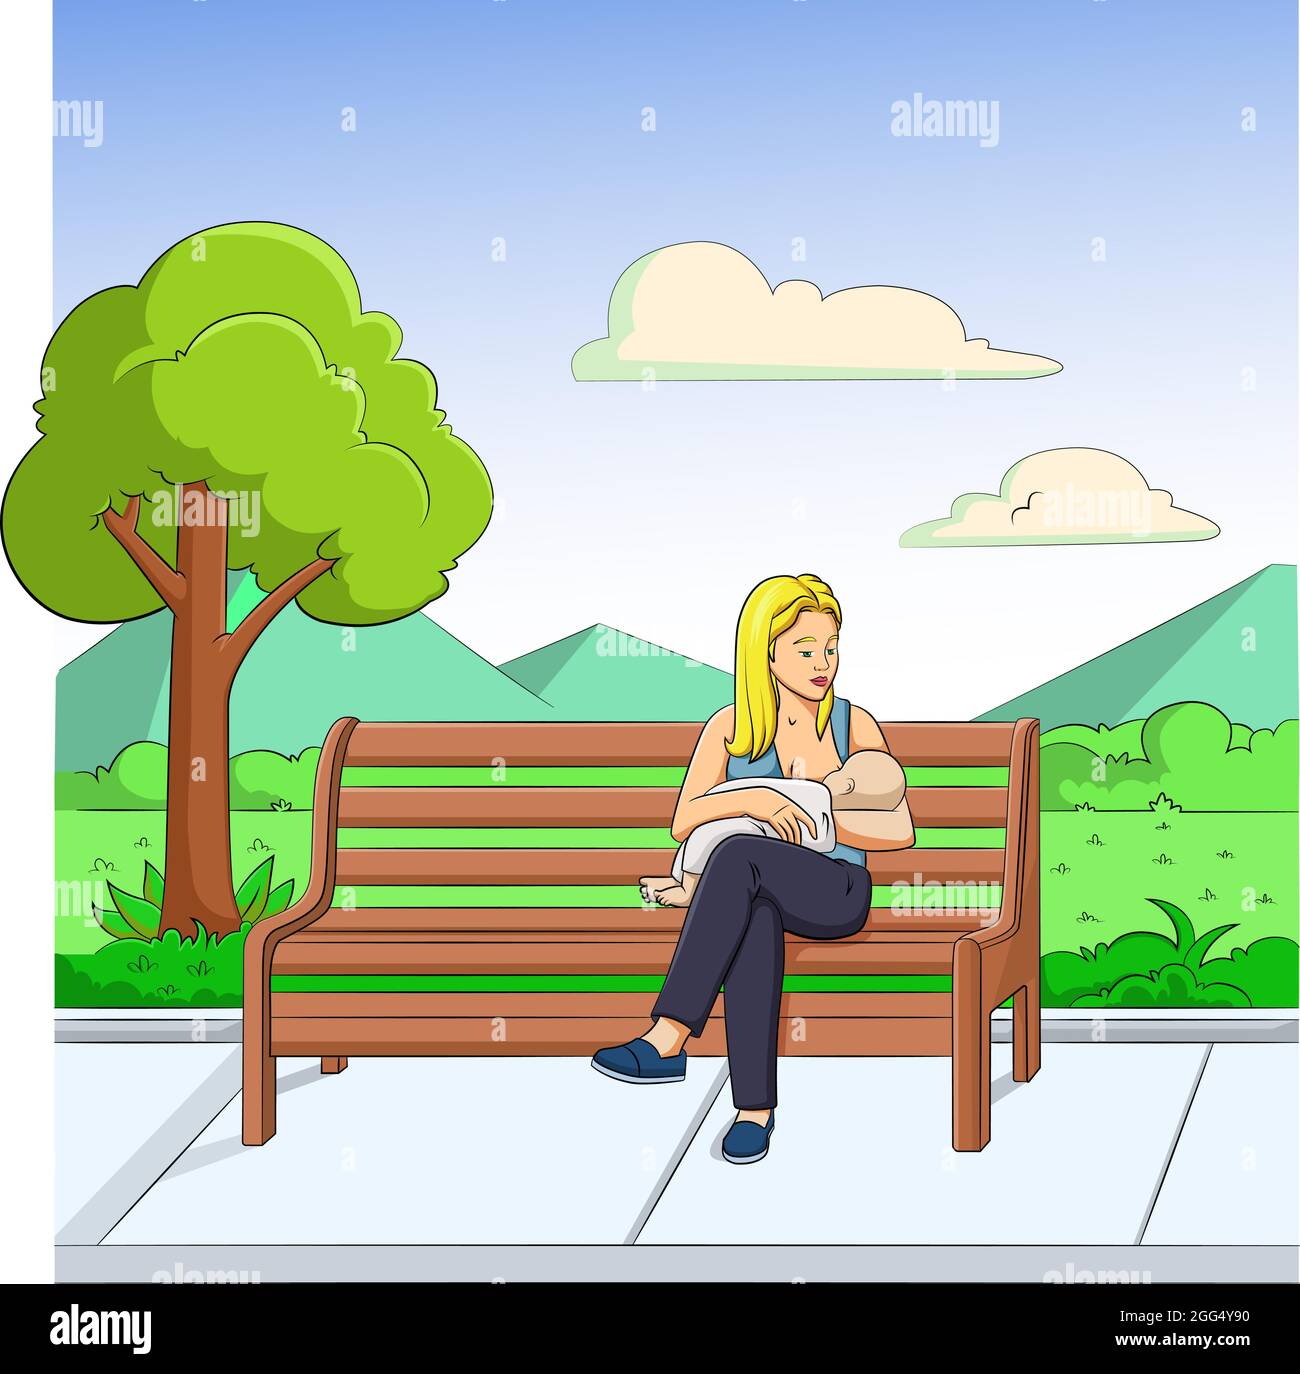 Illustration vectorielle de dessin animé d'une femme allaitant en public Illustration de Vecteur